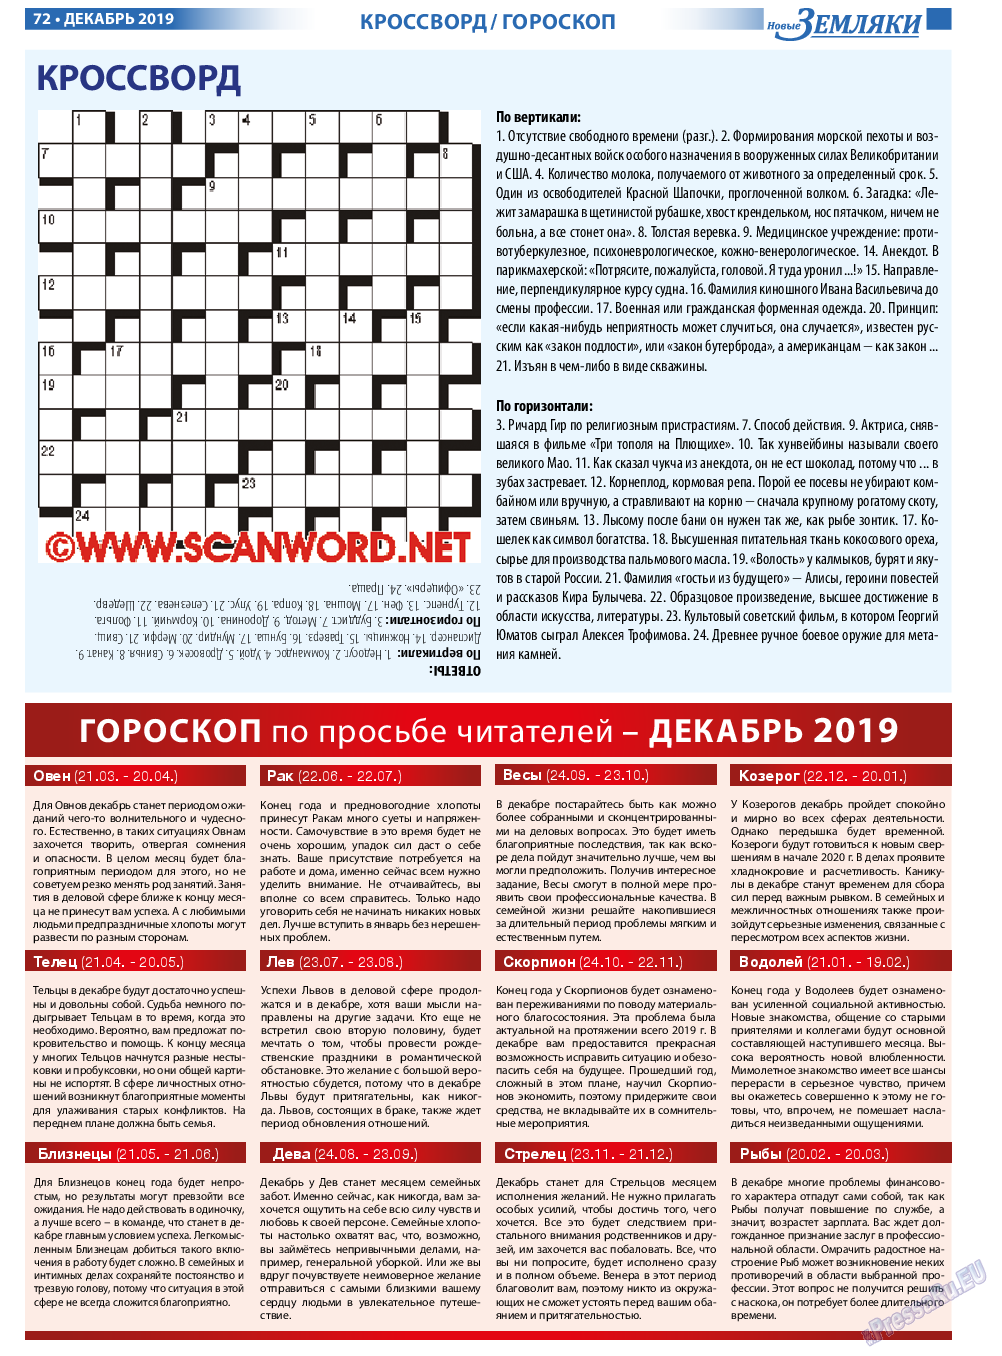 Новые Земляки, газета. 2019 №12 стр.72